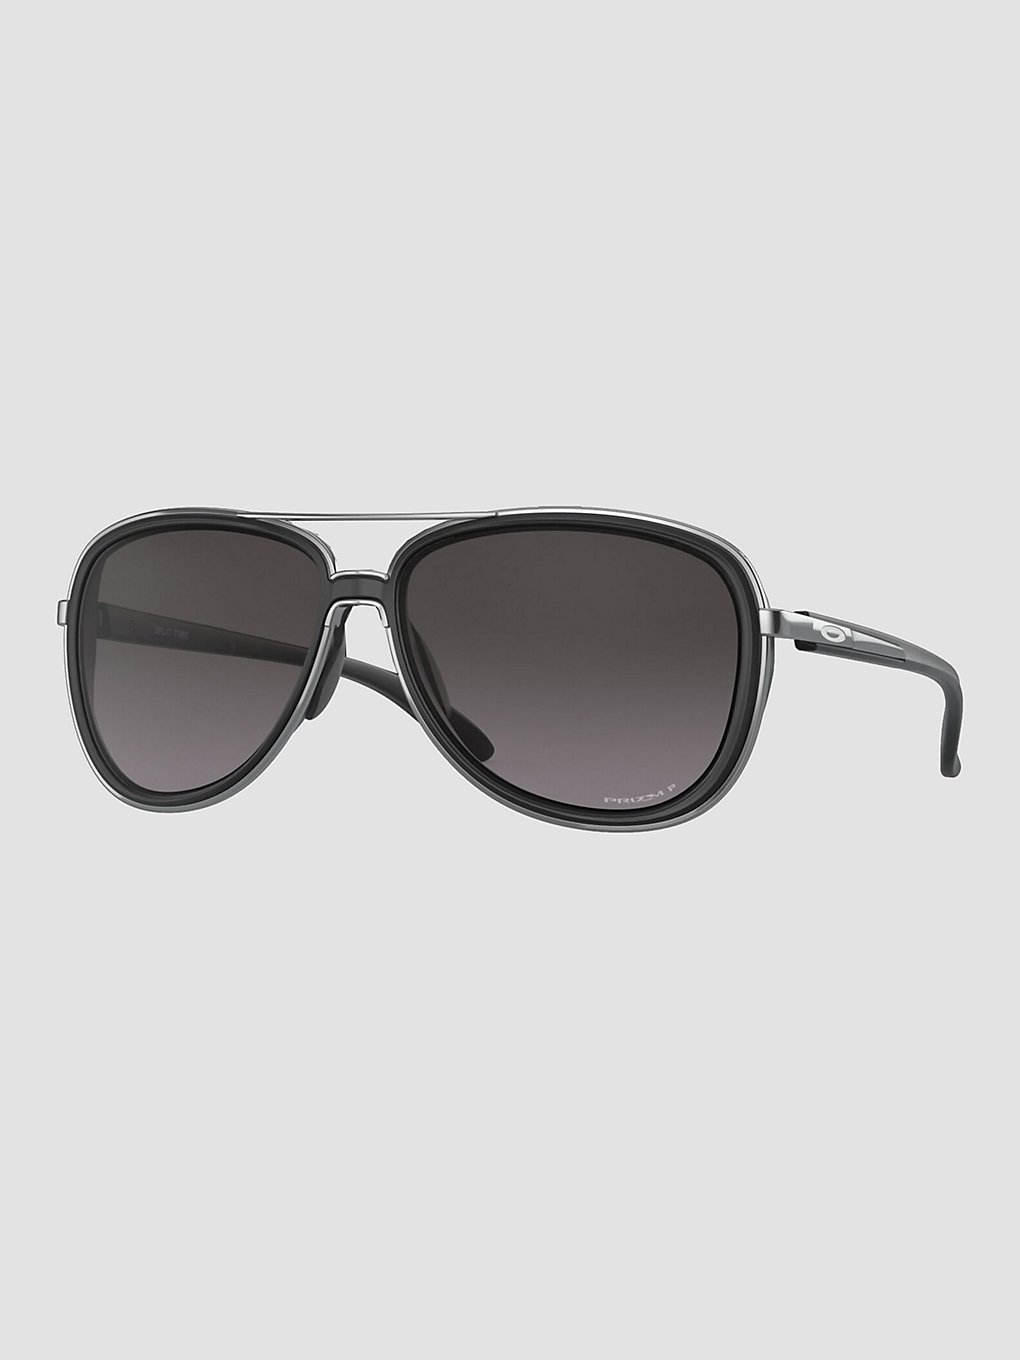 Oakley Split Time Velvet Black Sunglasses prizm grey gradient